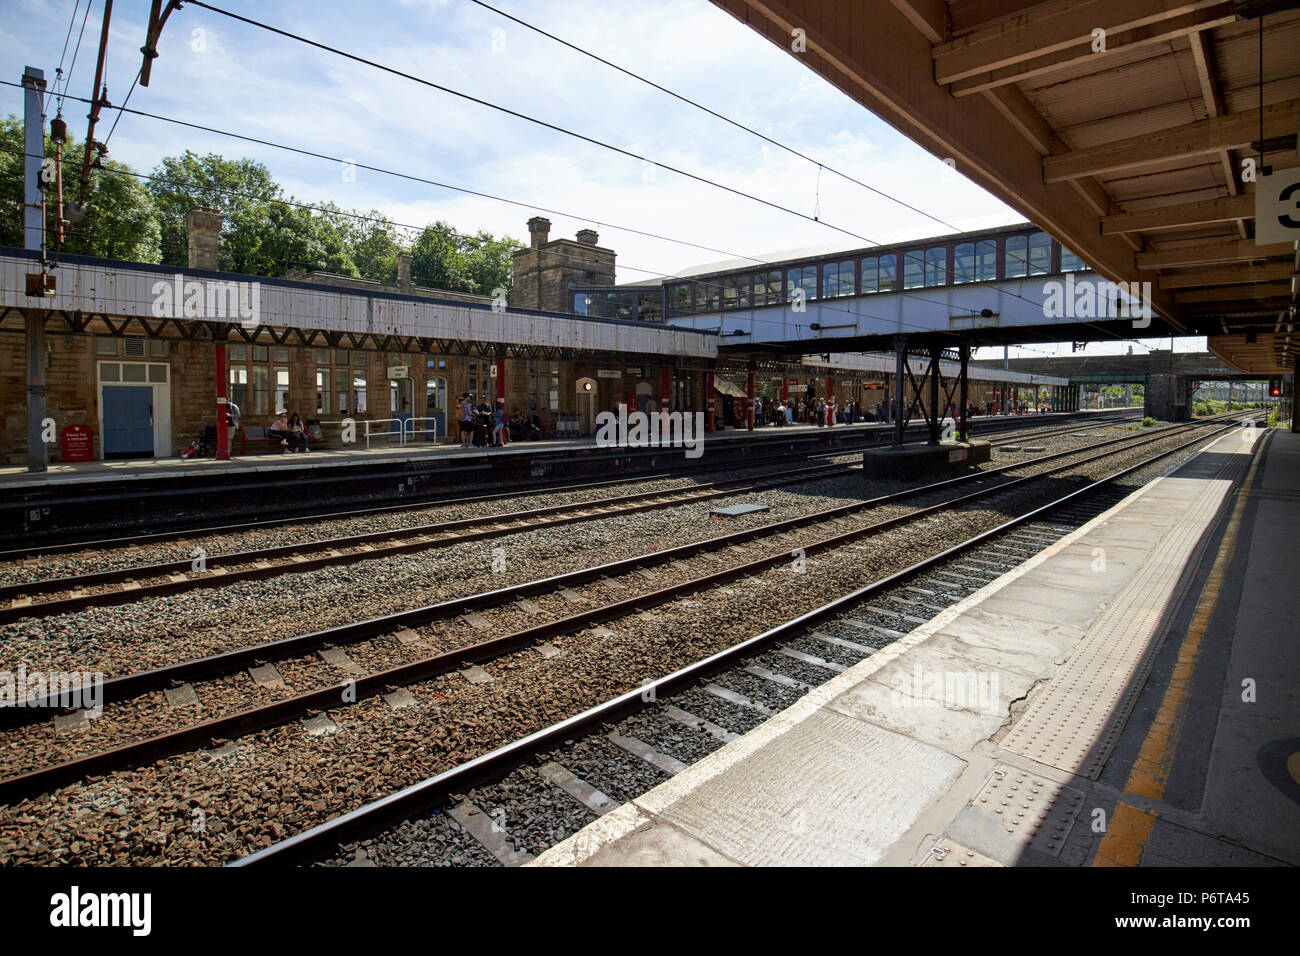 Lancaster railway station england uk Stock Photo